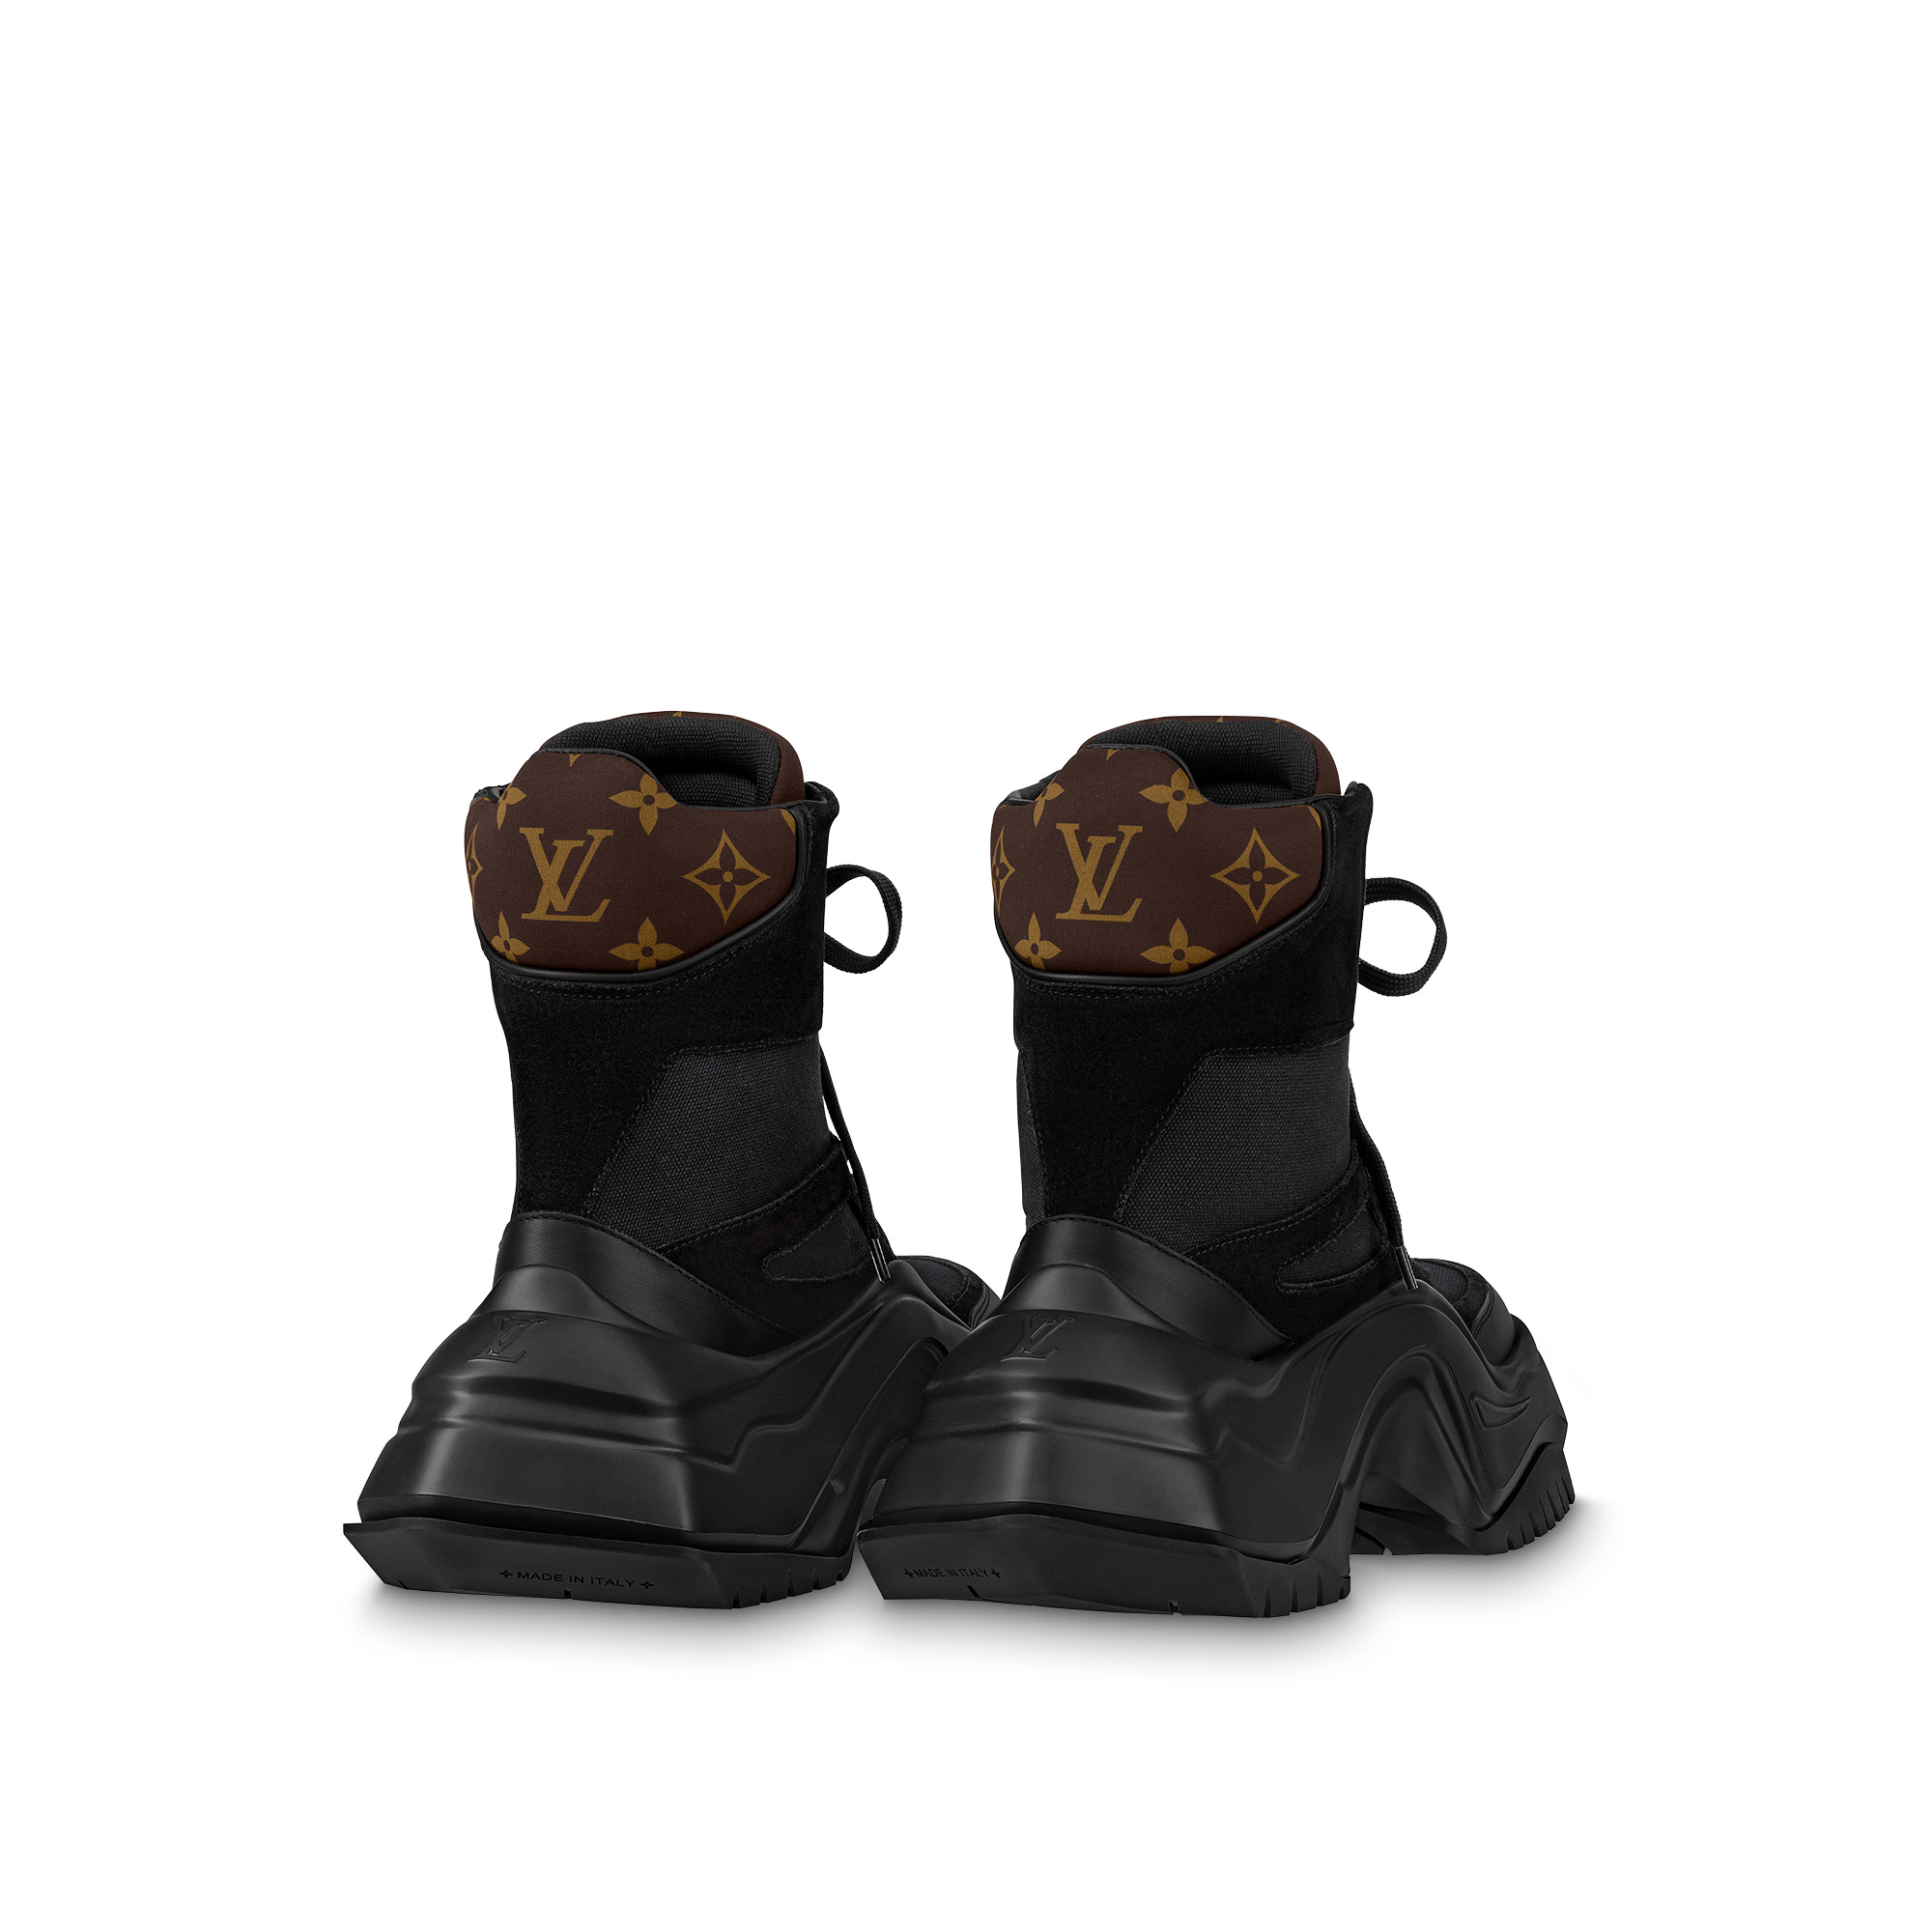 Louis Vuitton LV Archlight 2.0 Platform Ankle Boot Khaki. Size 35.0